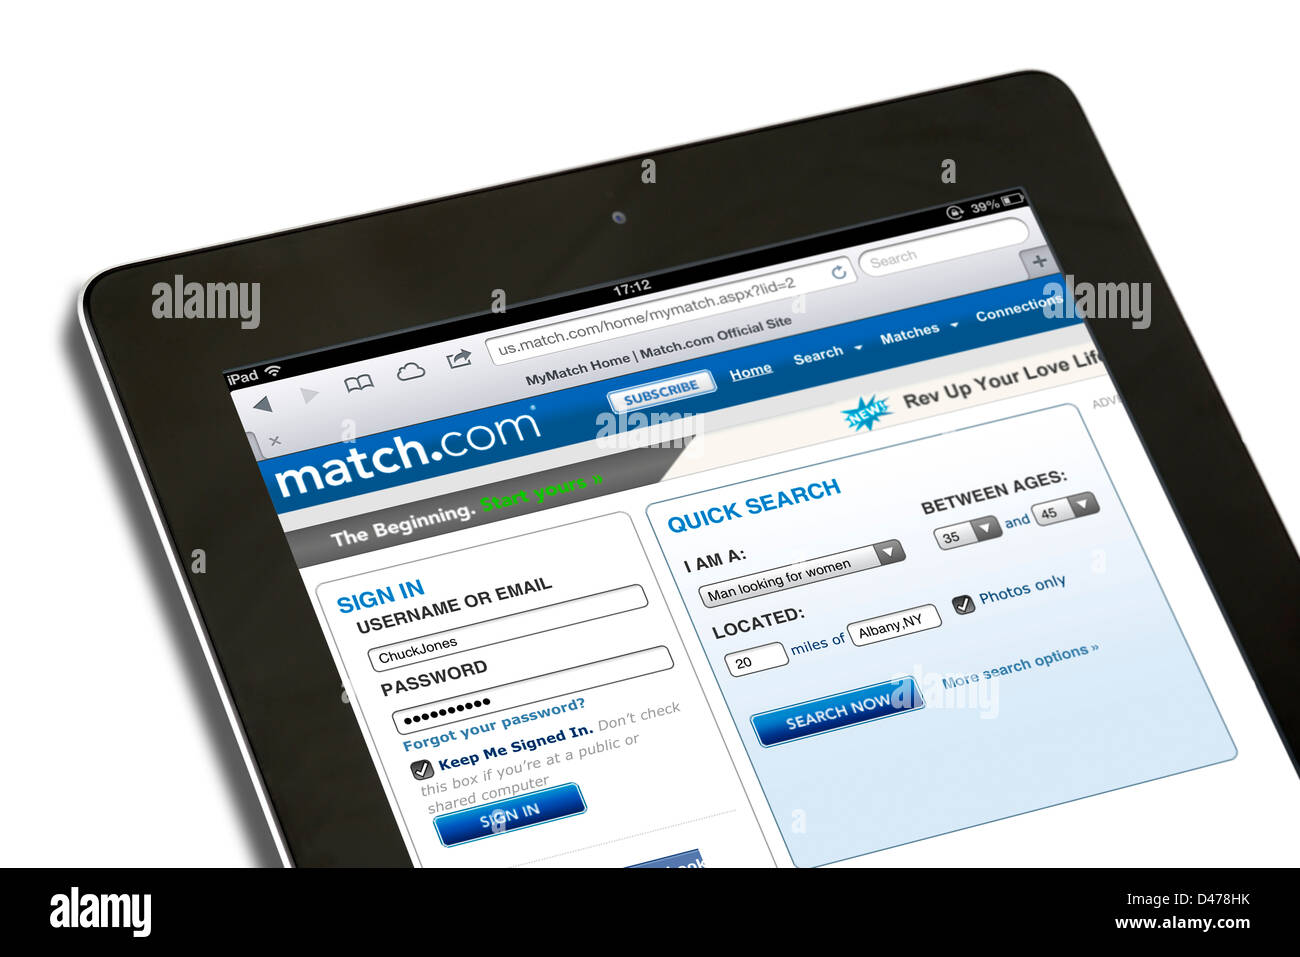 El sitio de citas online match.com vistos en EE.UU. en la 4ª generación de Apple iPad, EE.UU. Foto de stock